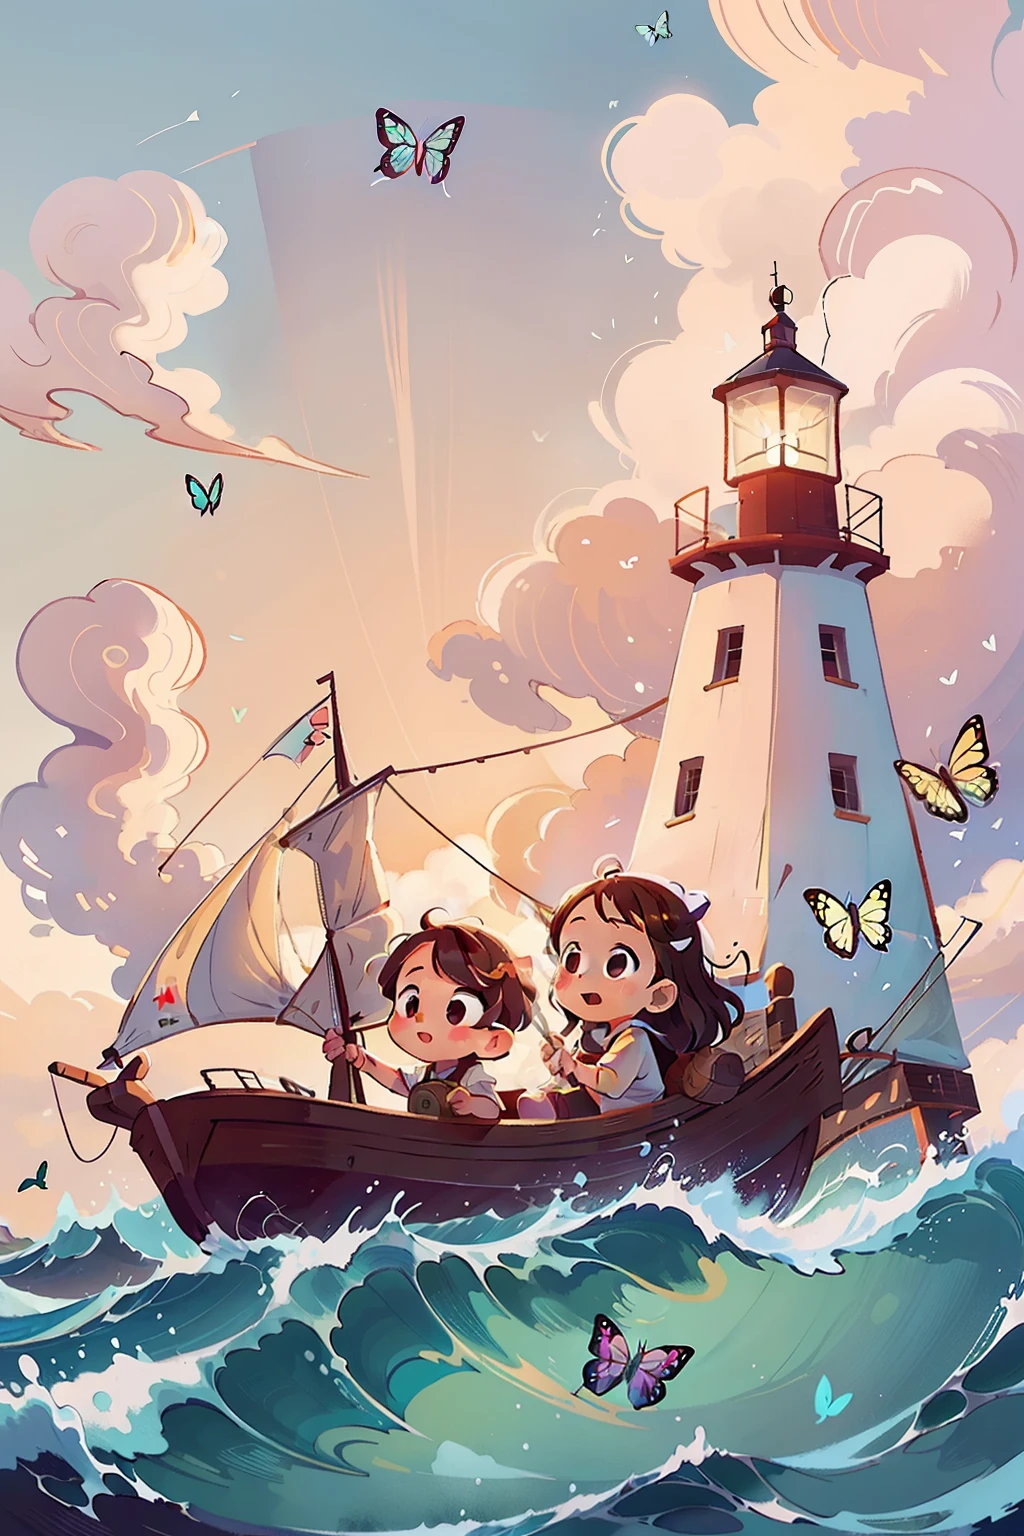 Genera una imagen de dos niñas muy jóvenes navegando en un barco, ondas, Mar, cielo con nubes blancas. mariposas coloridas, Faro al fondo,